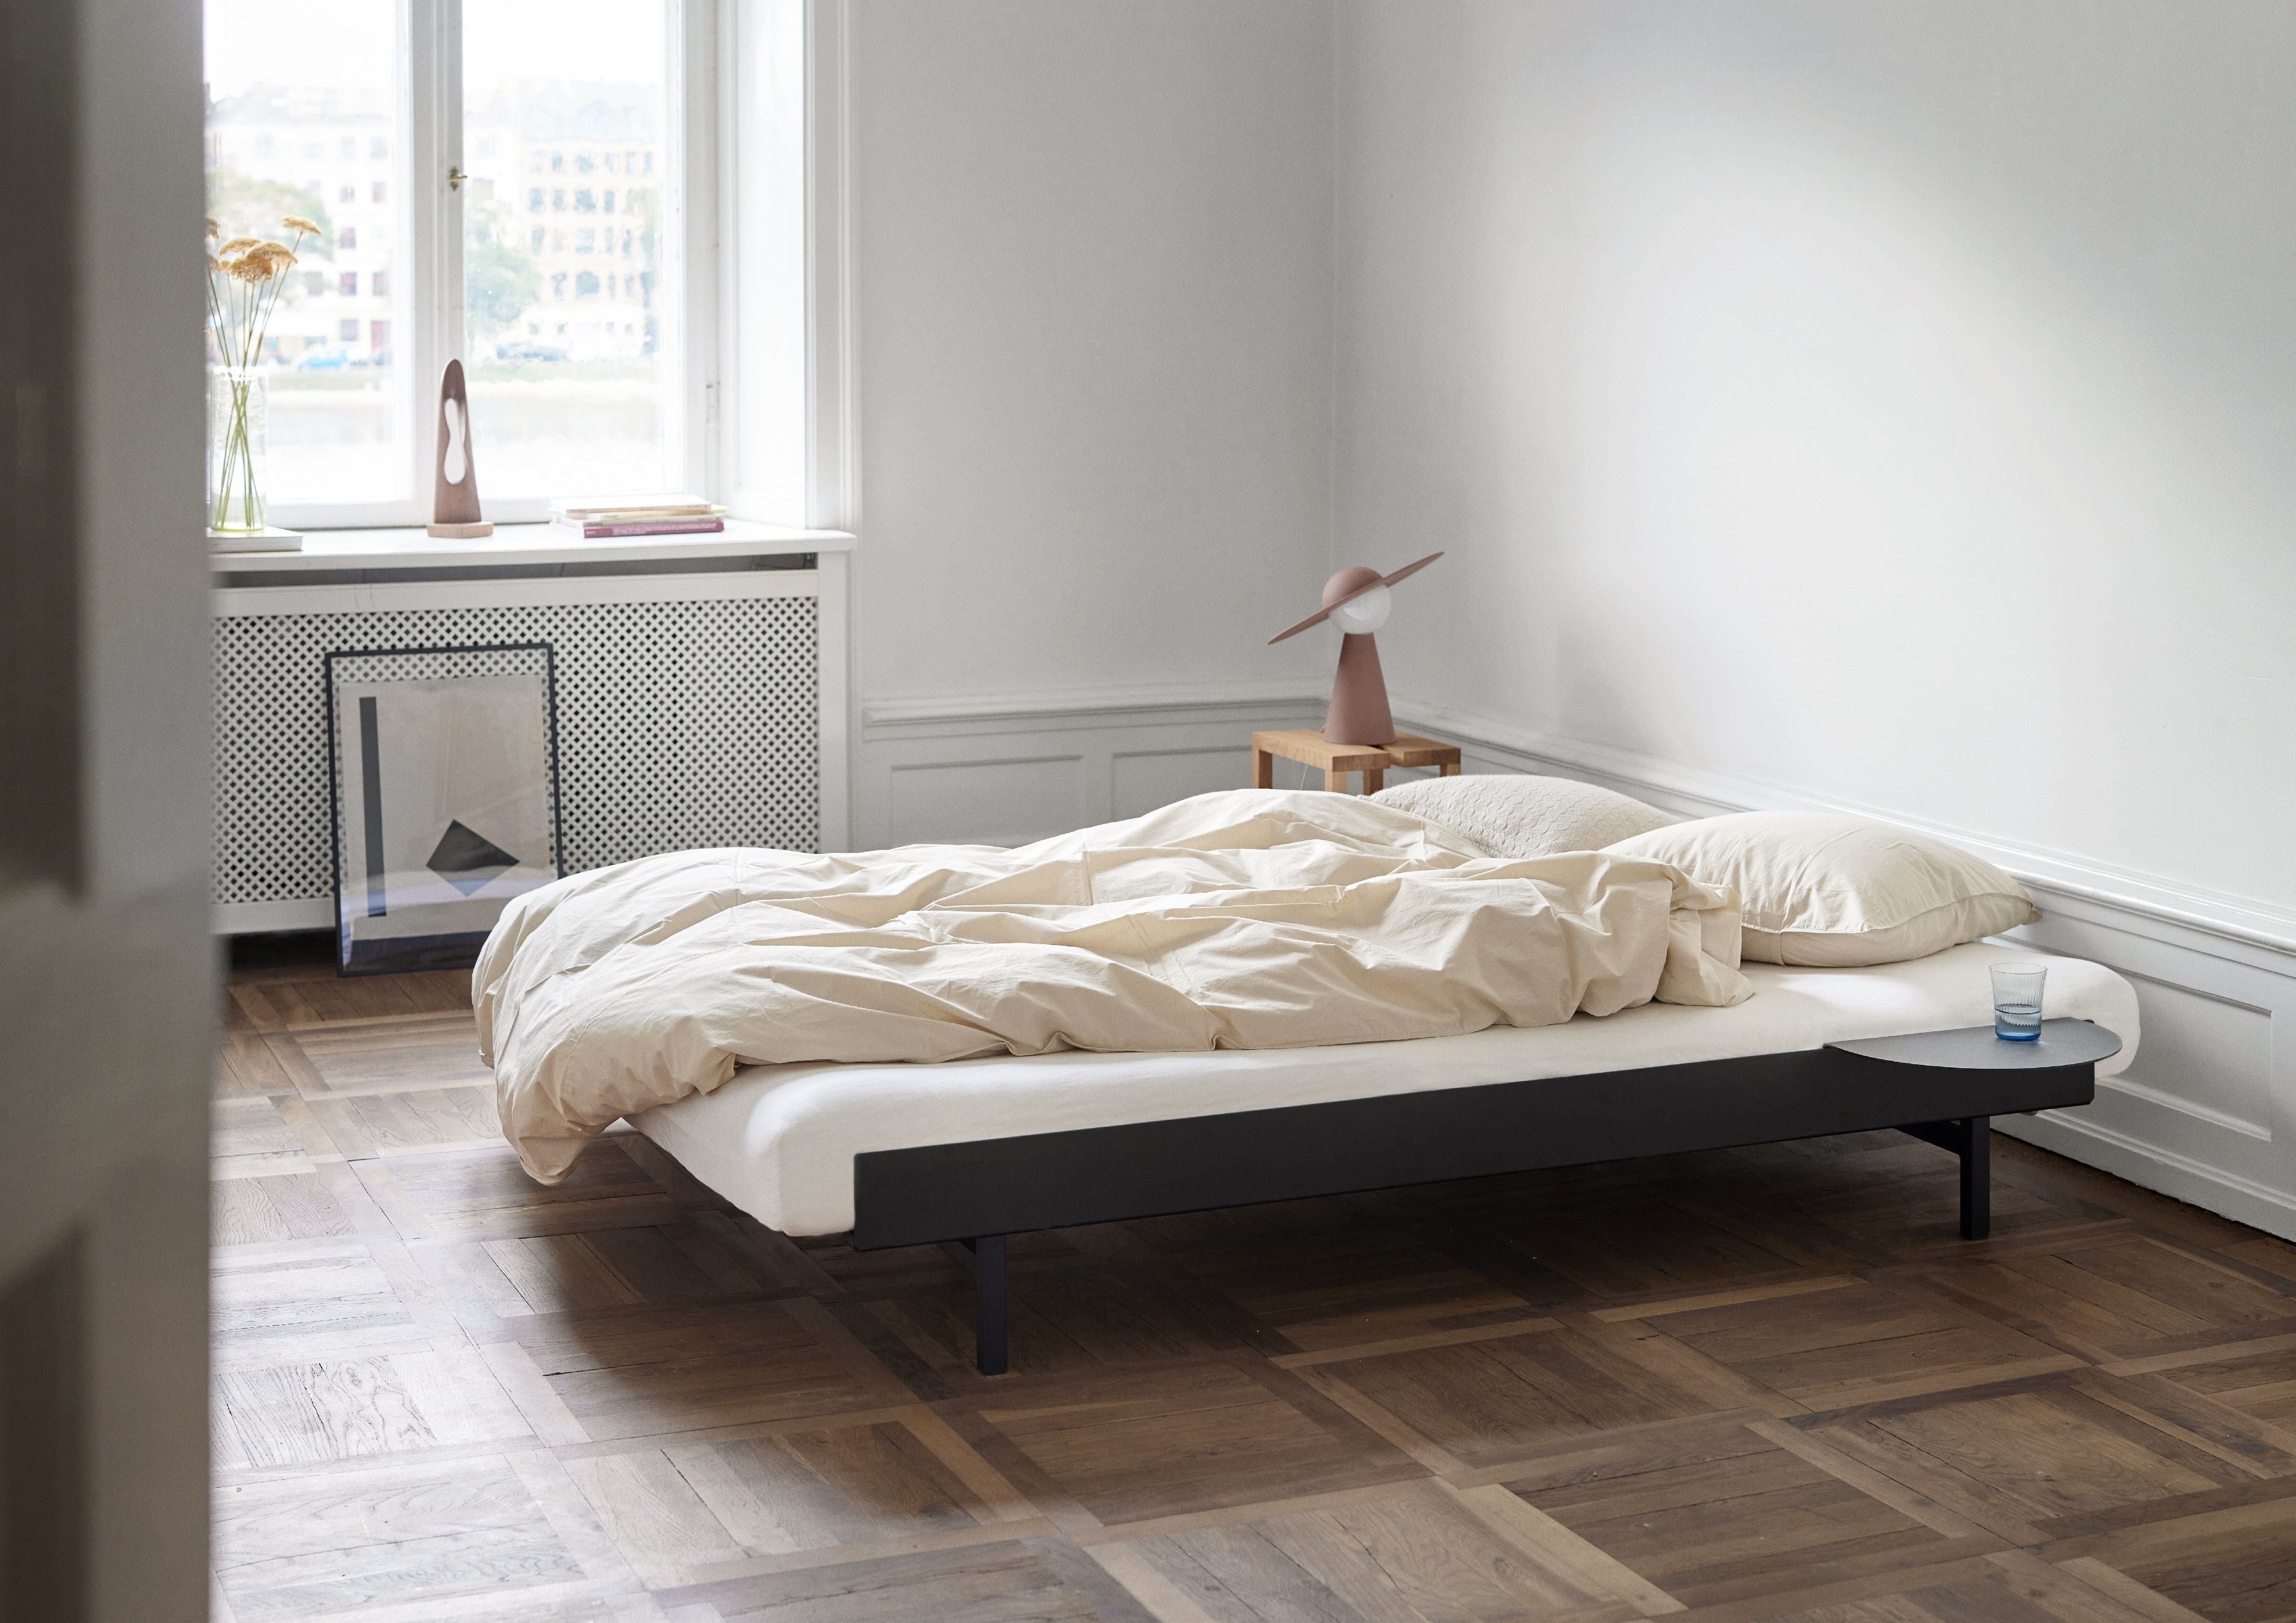 Moebe seng med sengelats 160 cm, sort